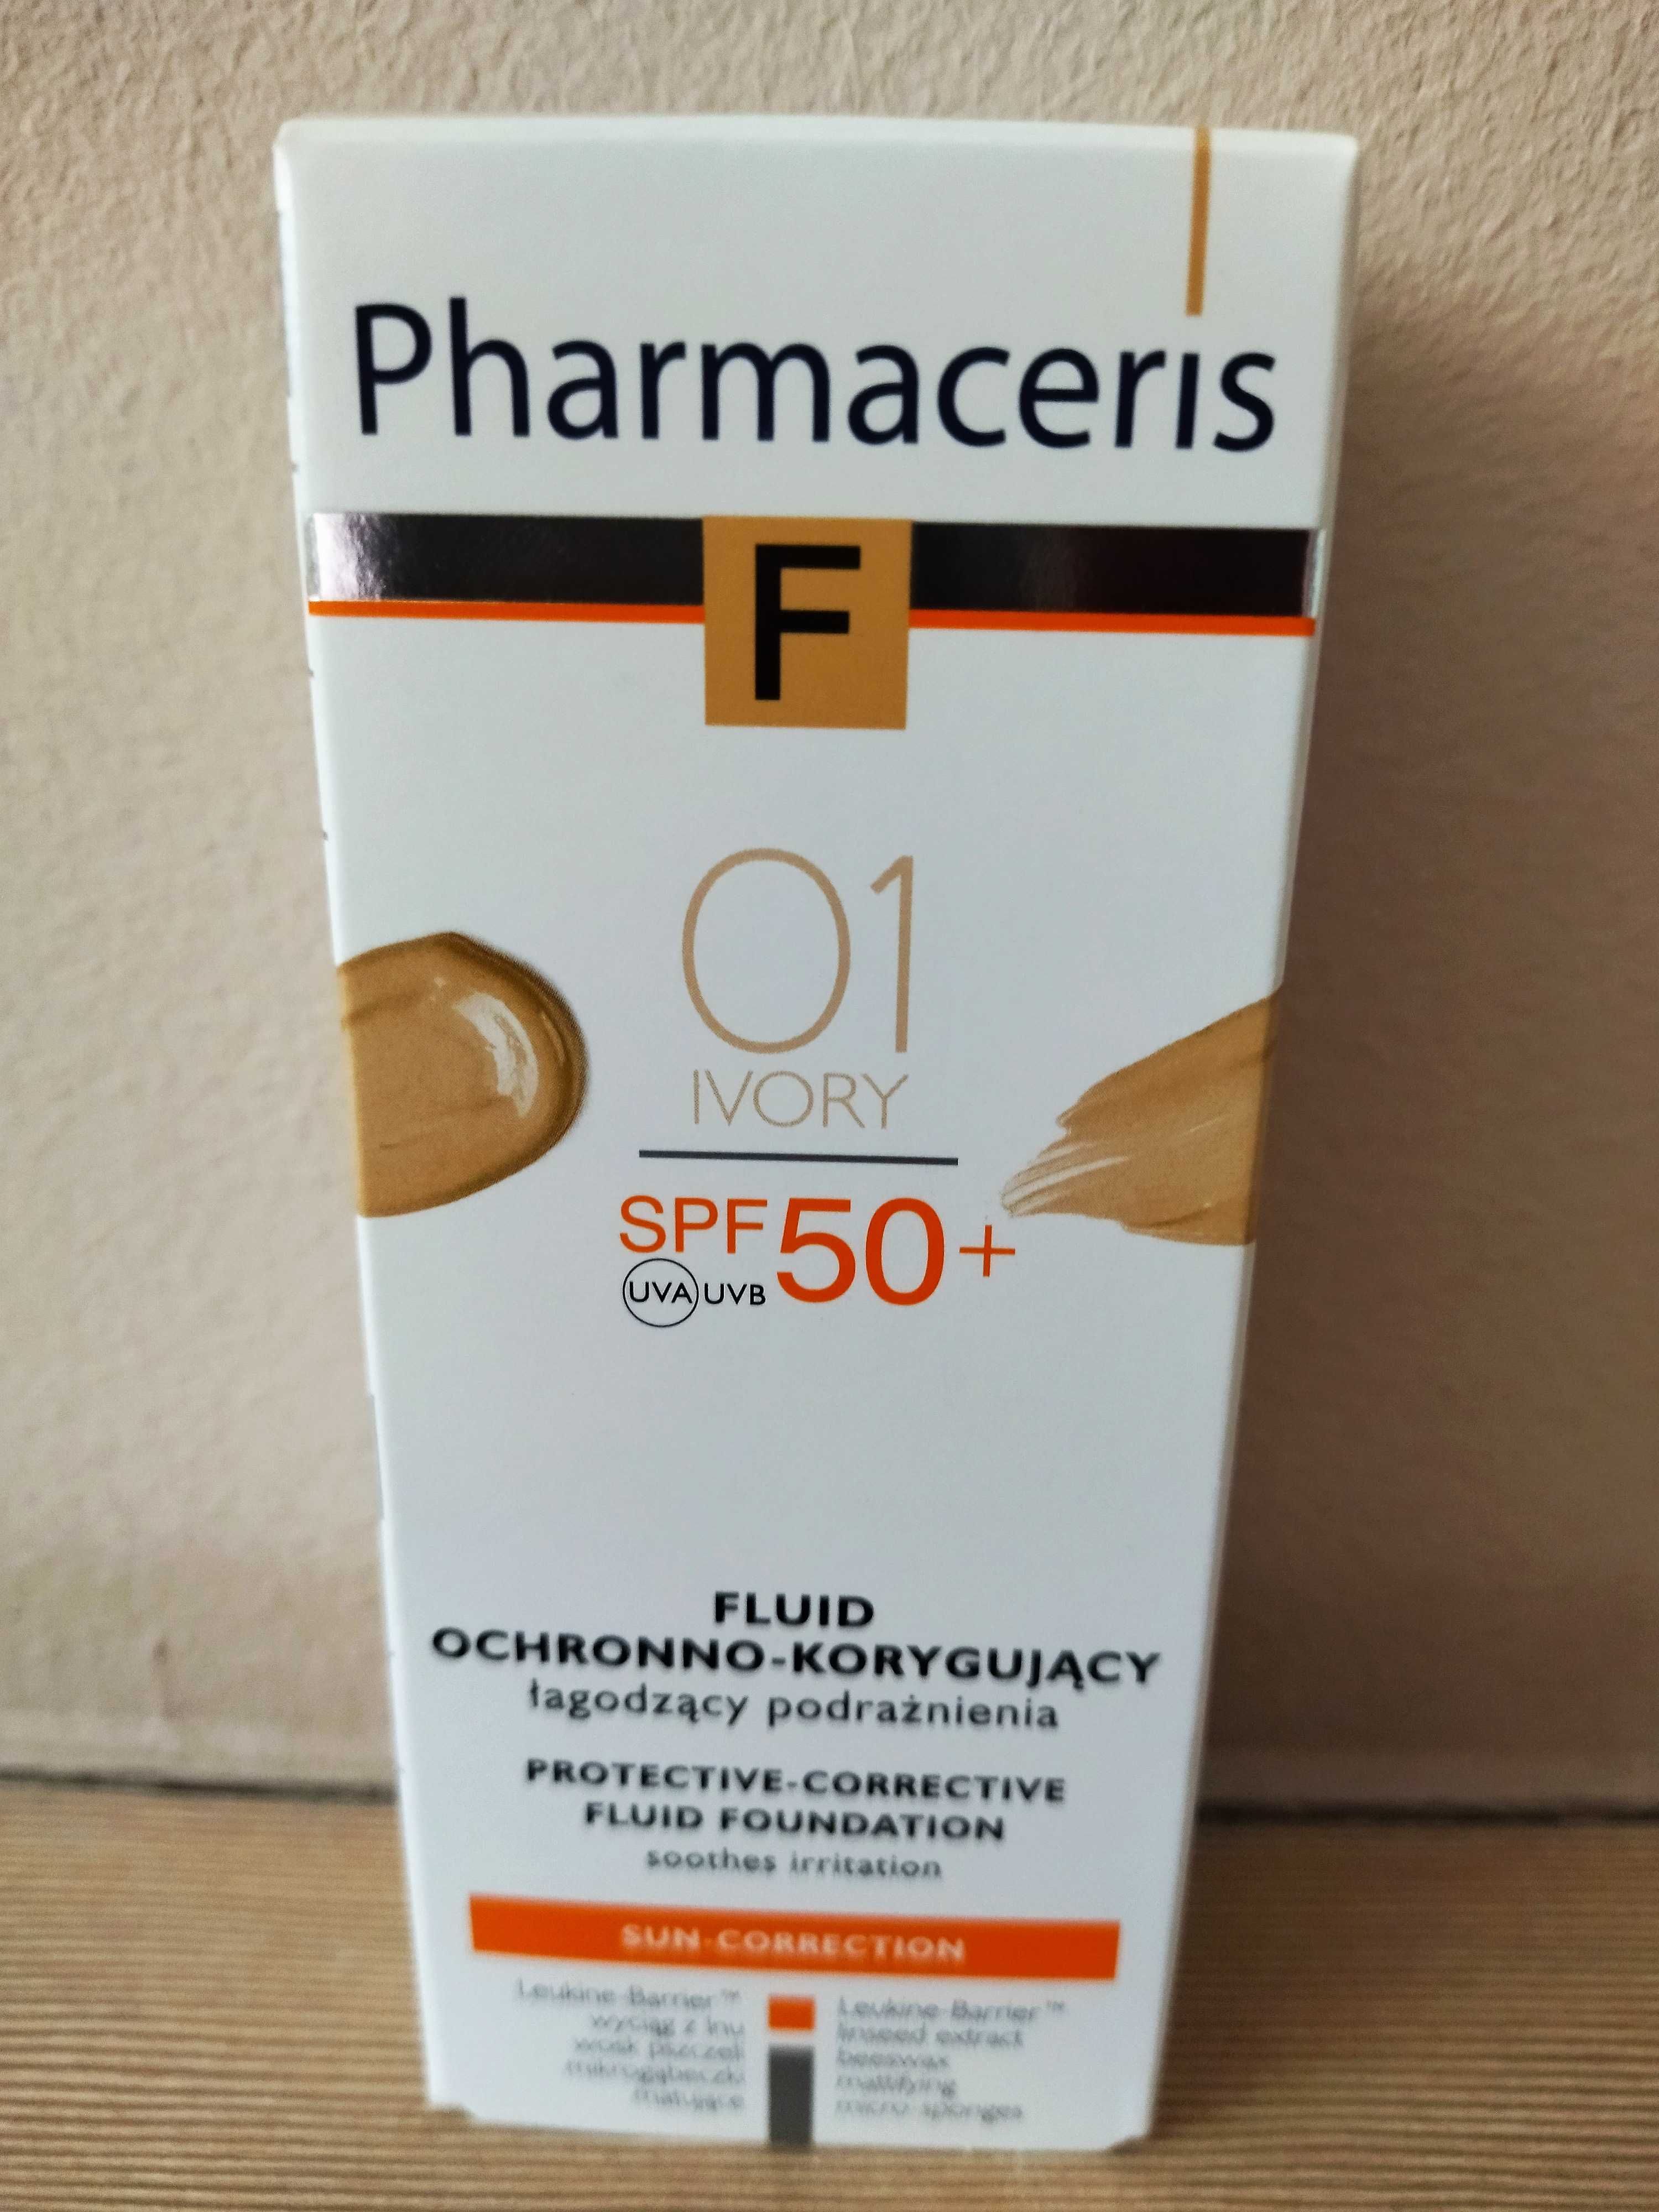 Pharmaceris F 30 ml 01 ivory
podkład korygujący z filtrem